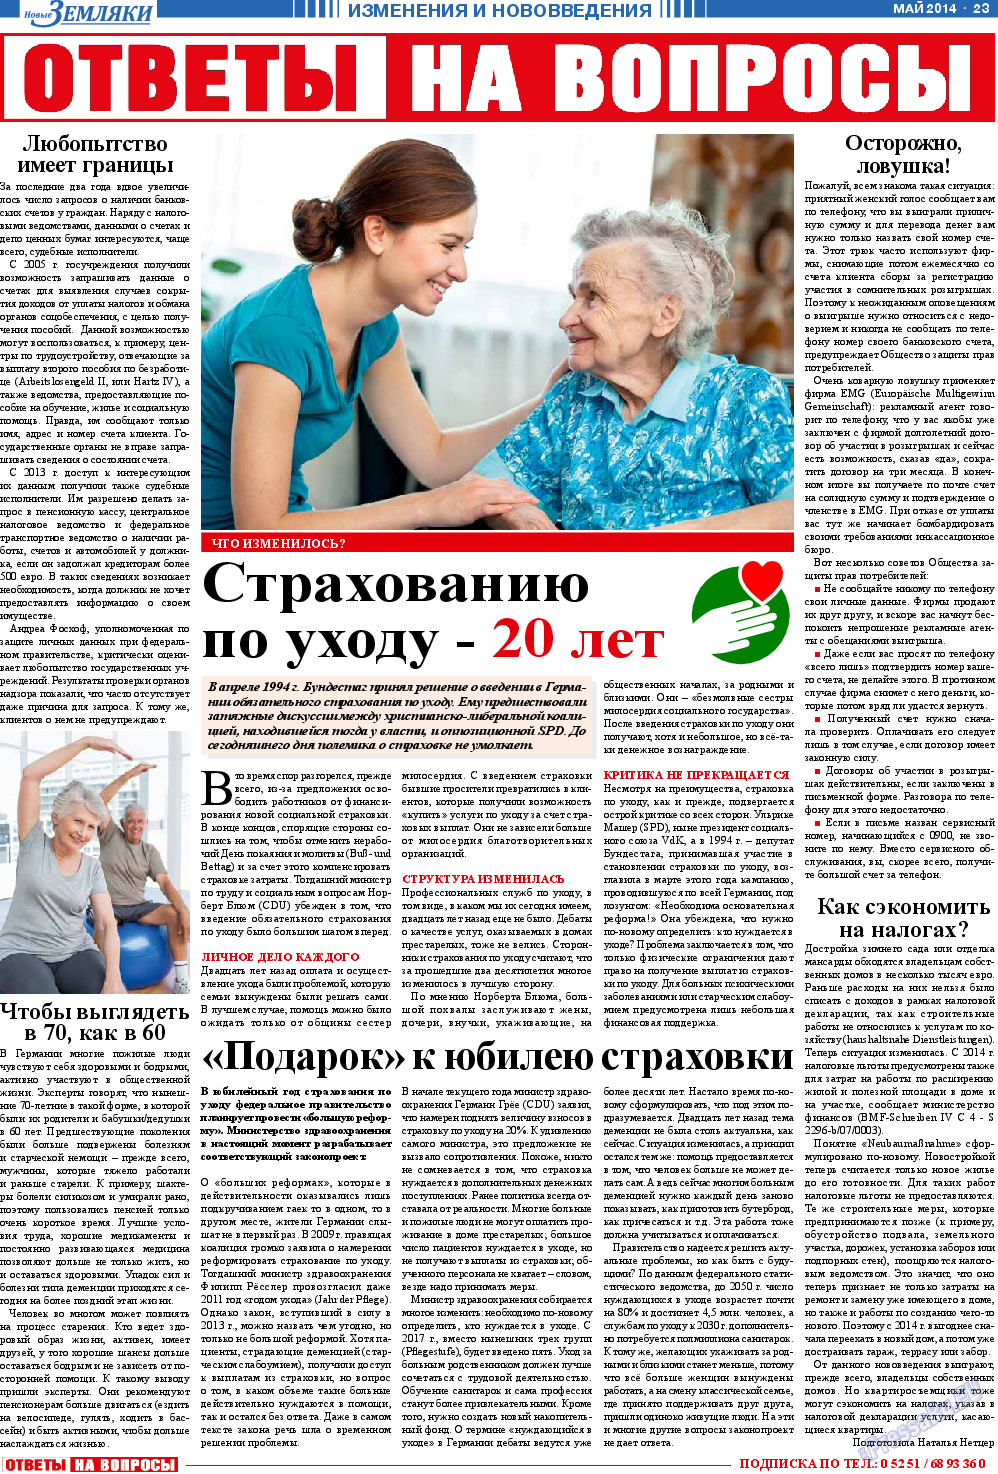 Новые Земляки, газета. 2014 №5 стр.23